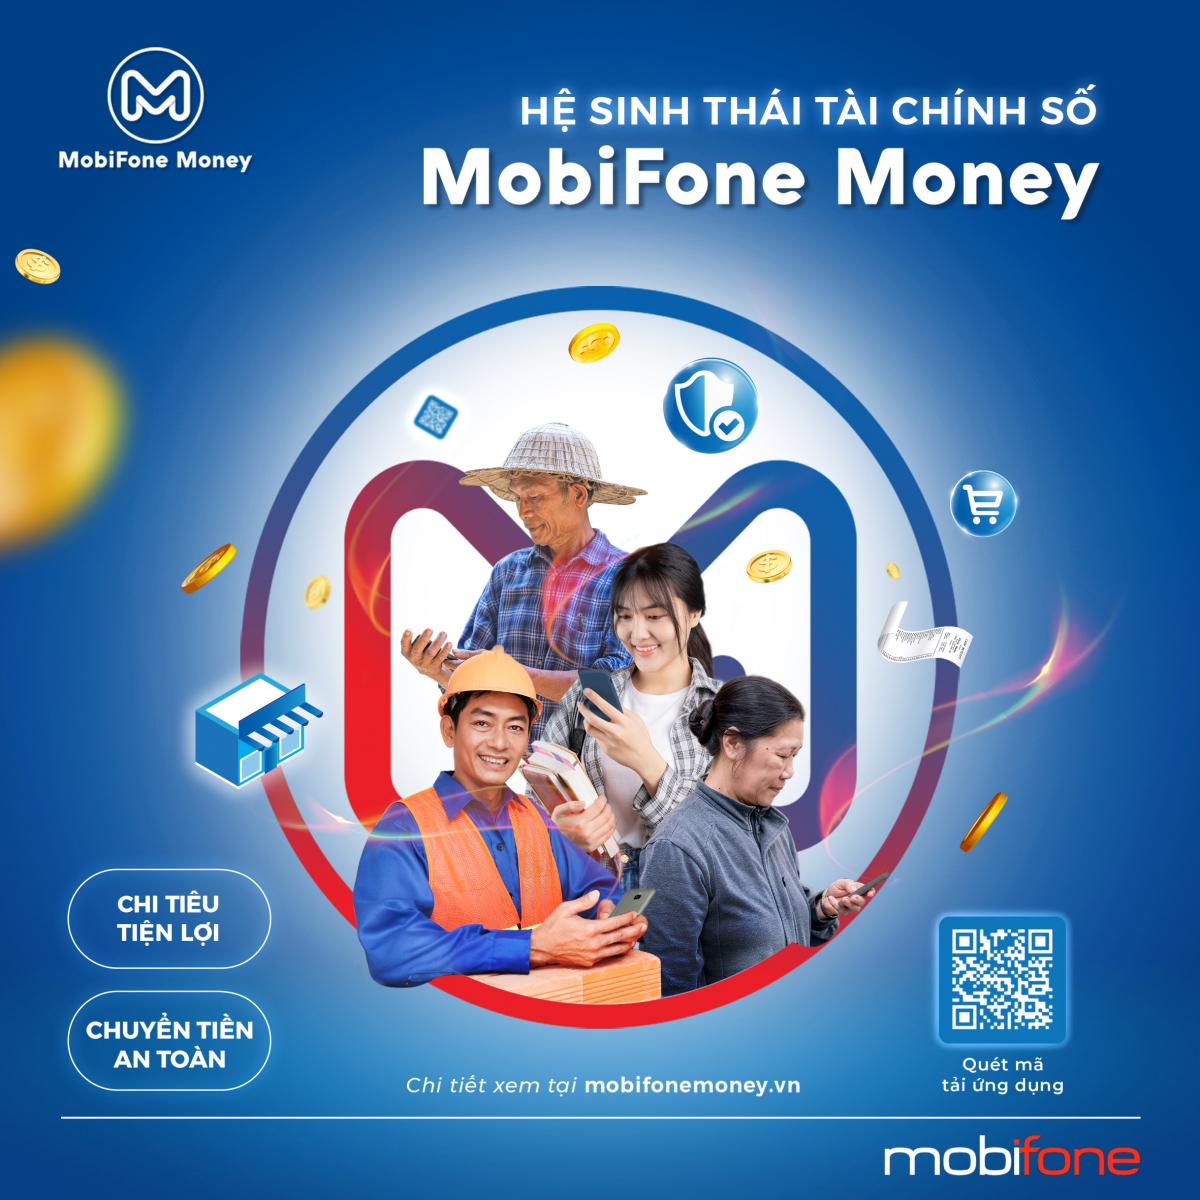 MobiFone cung cấp nhiều dịch vụ thanh toán không tiền mặt và chuyển đổi số